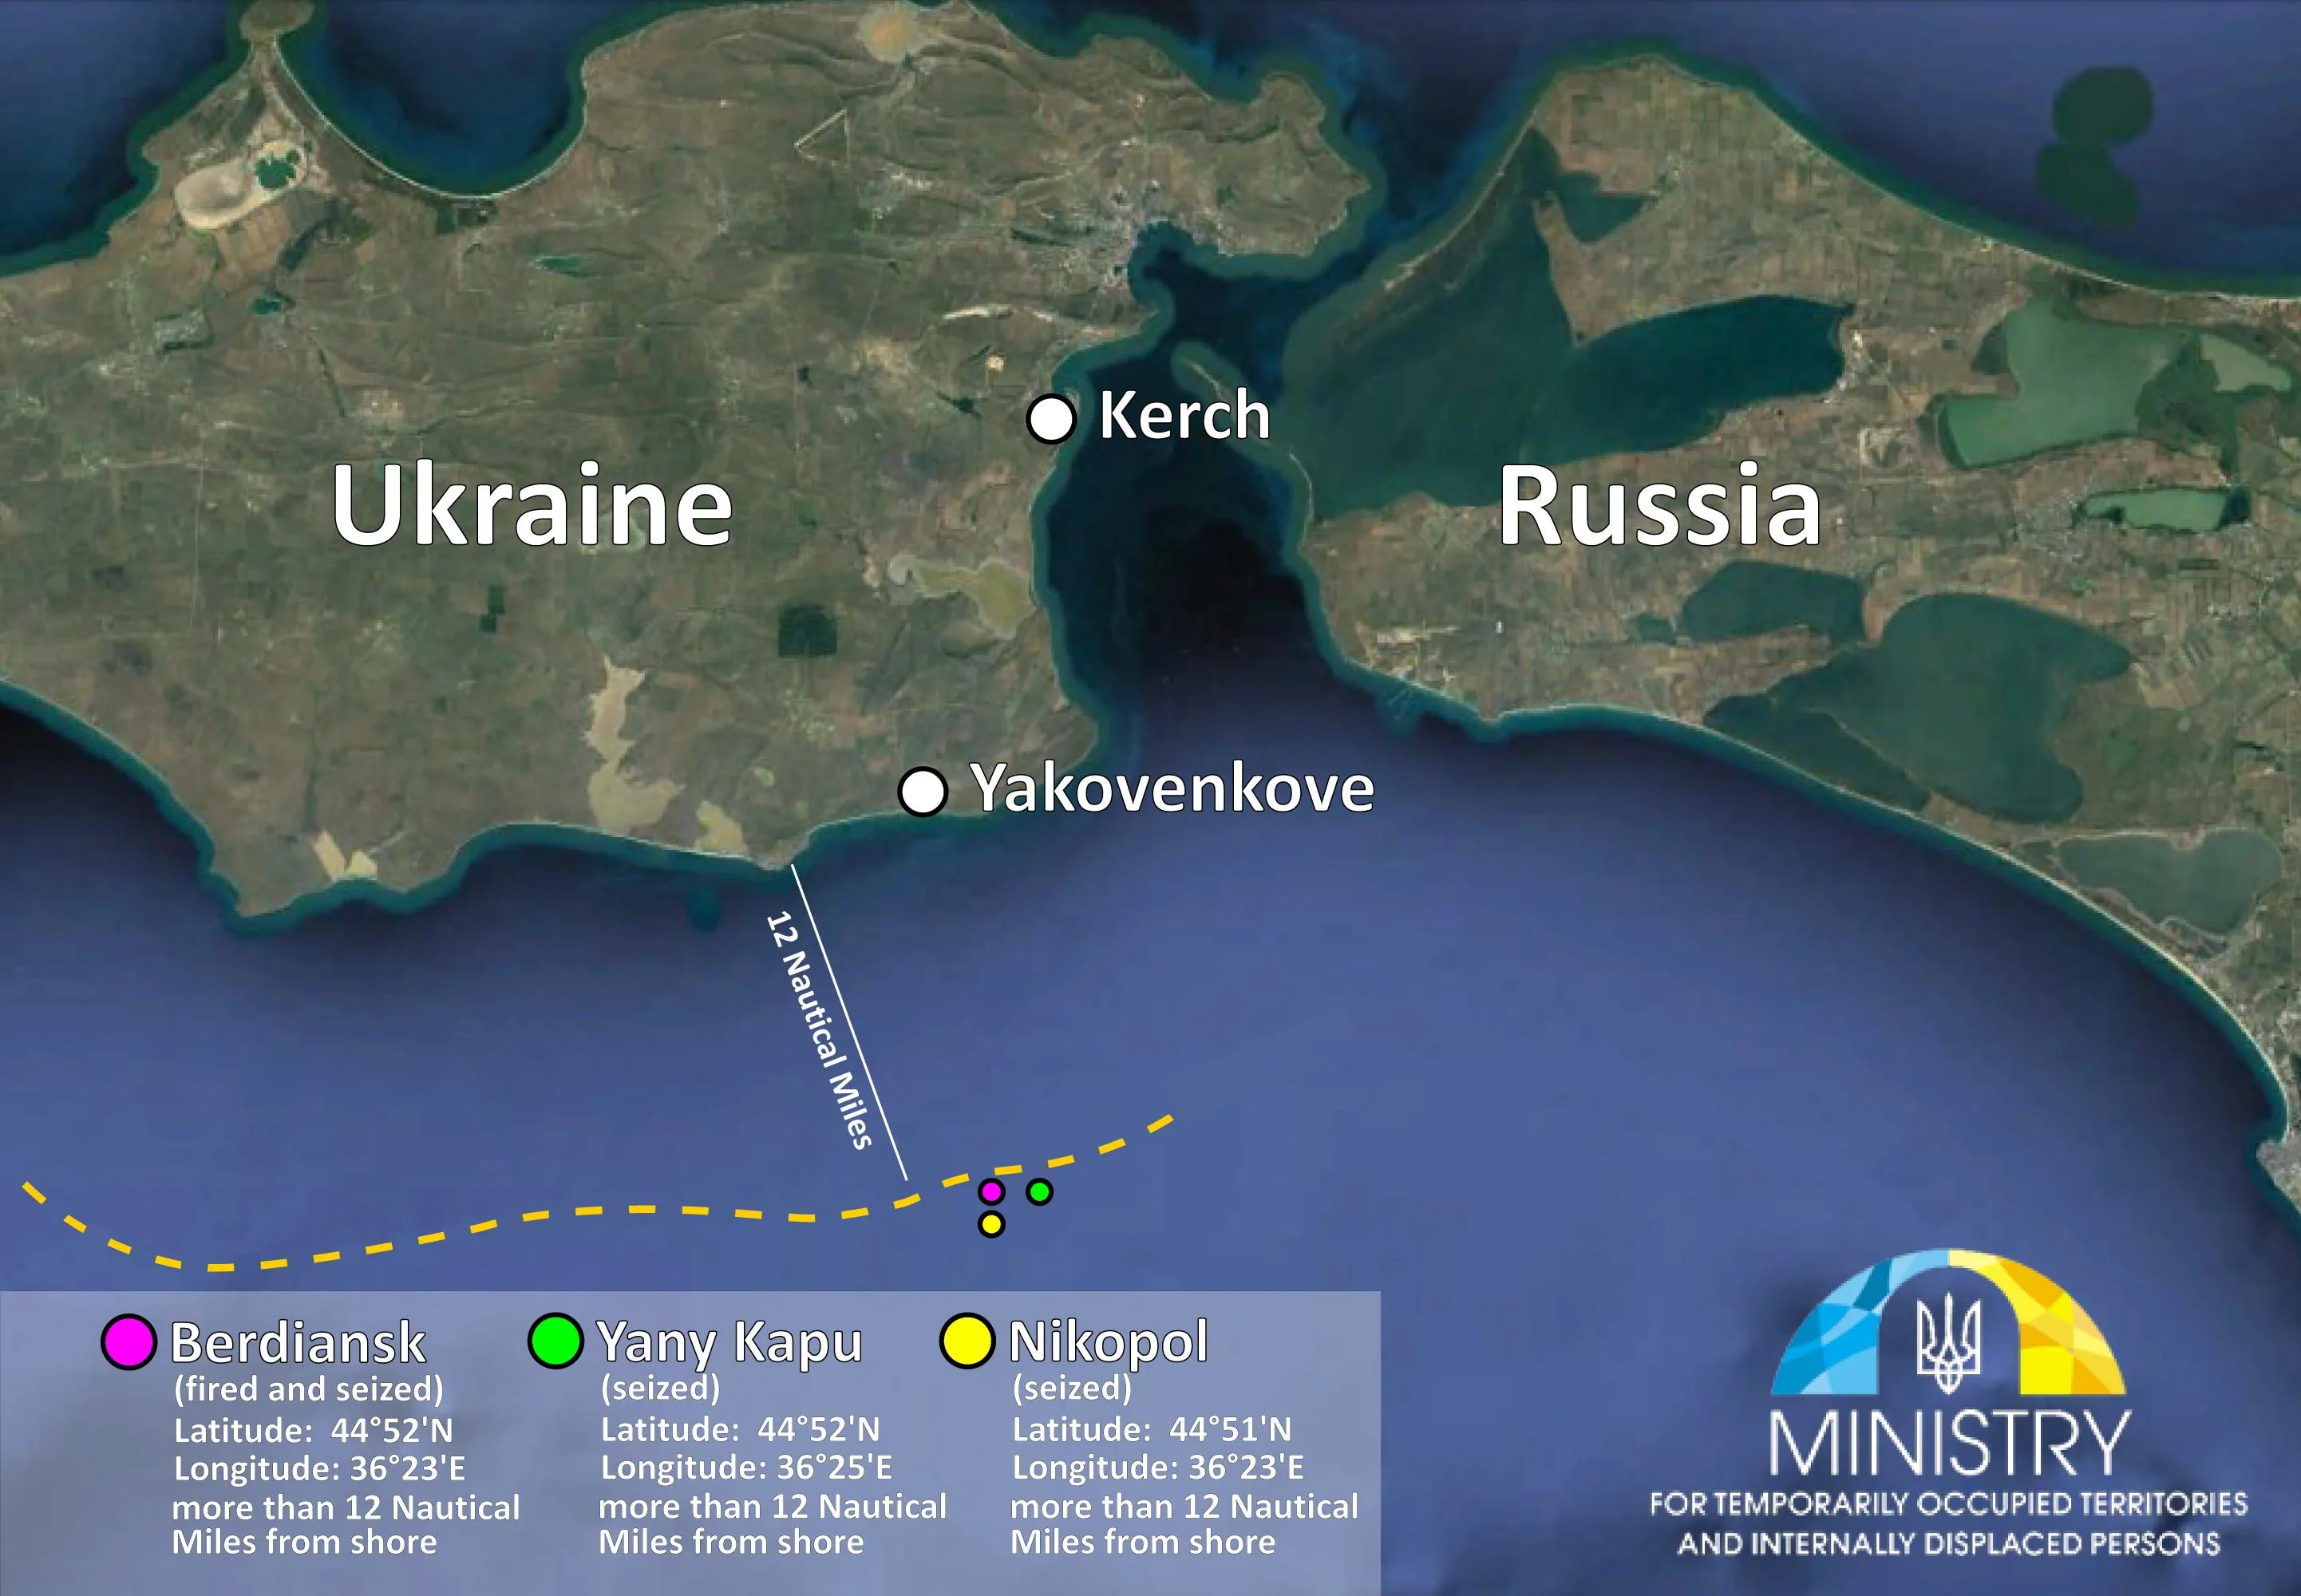 кораблі Азовське море Чорне море моряки агресія РФ Росія напад